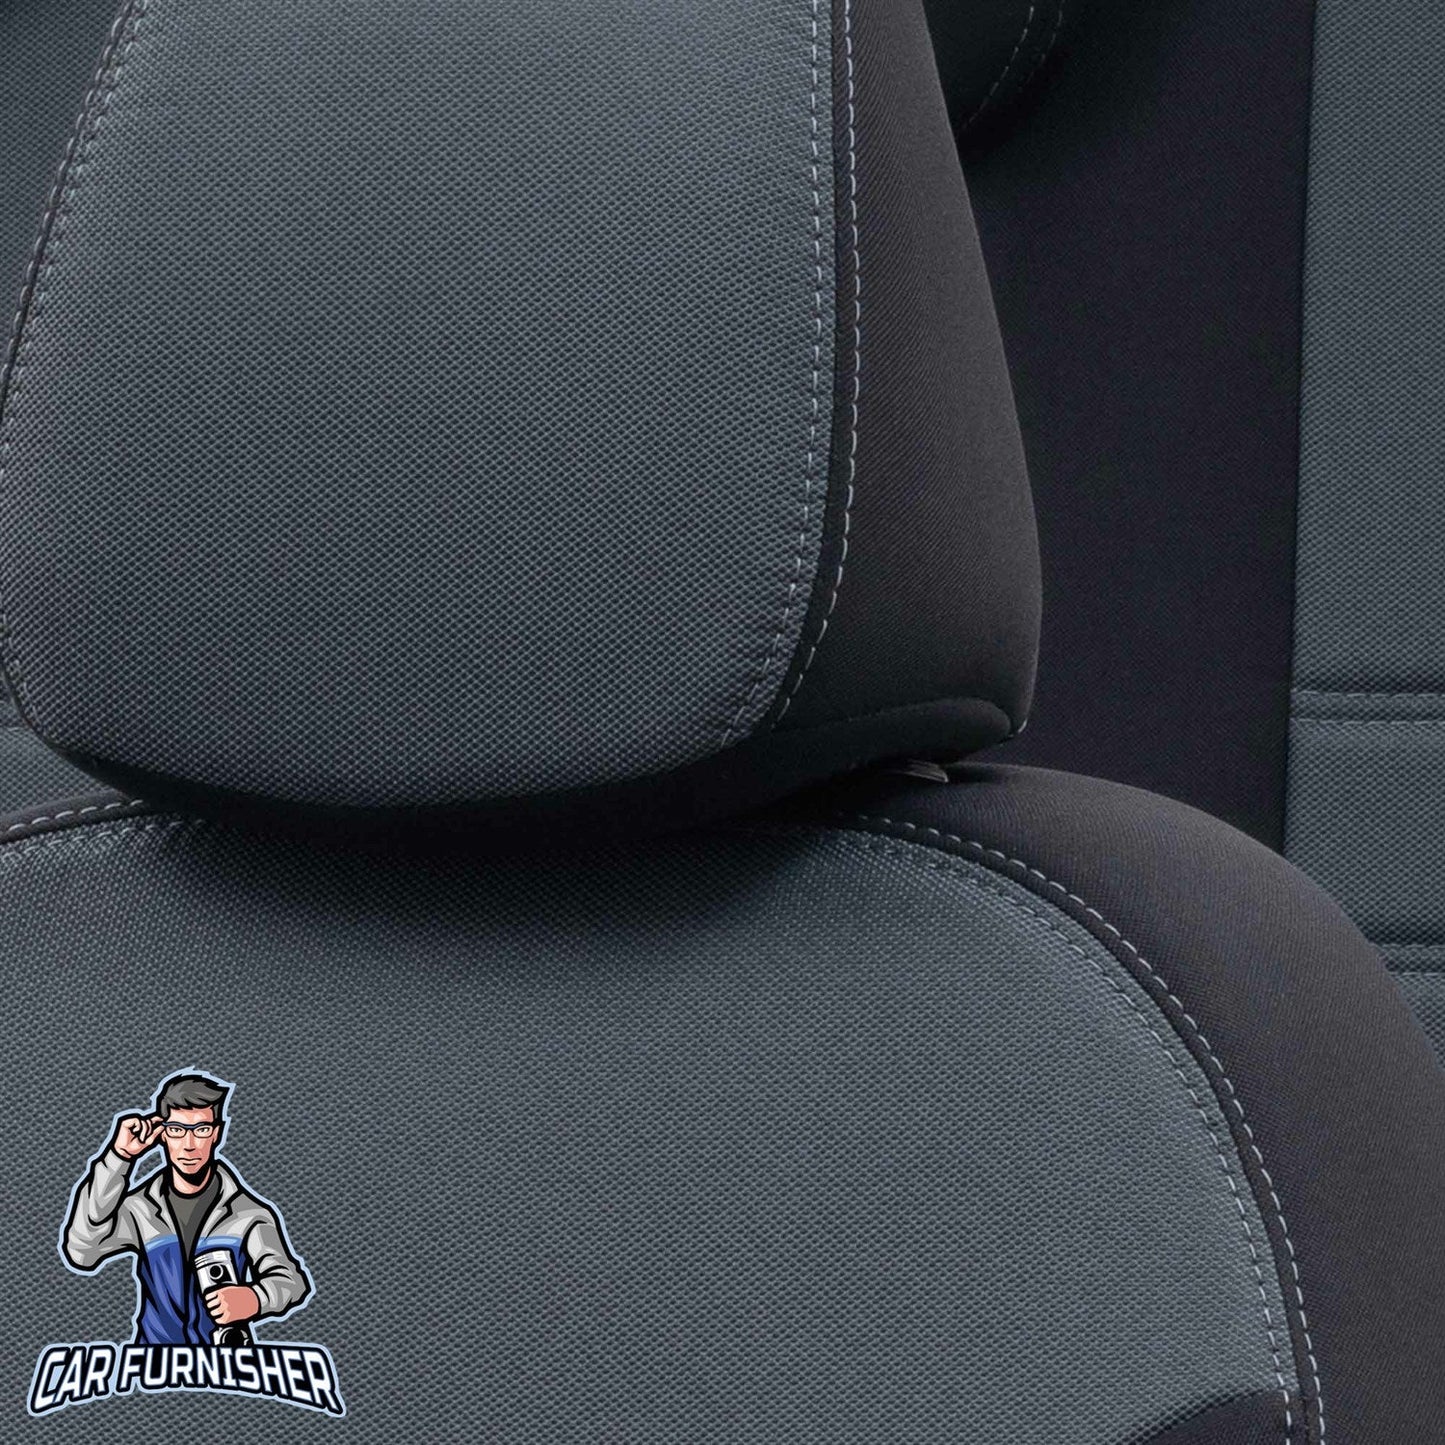 Kia Cerato Seat Covers Original Jacquard Design Smoked Black Jacquard Fabric